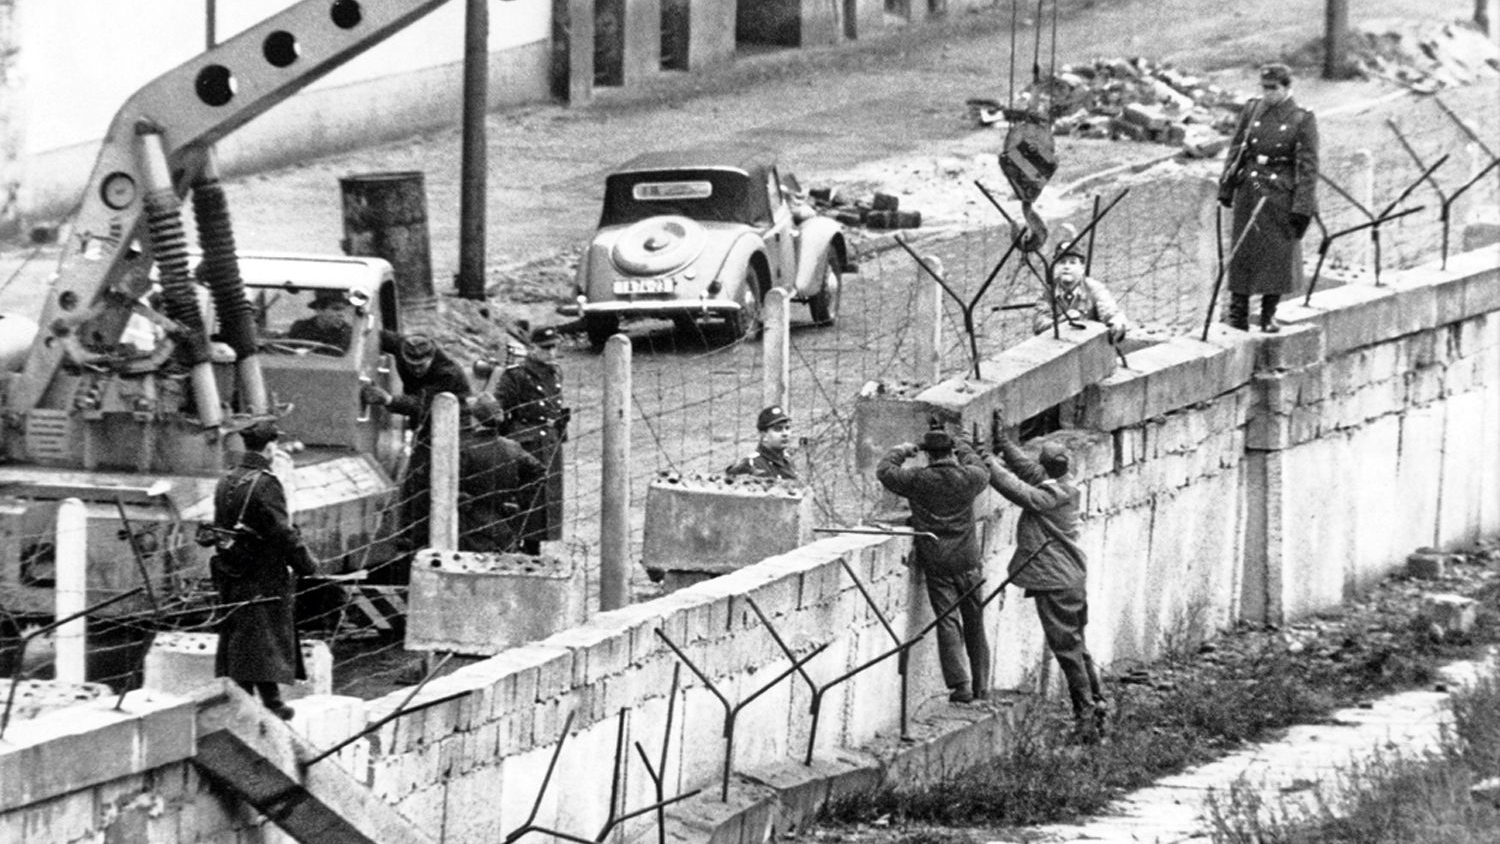 El 13 de agosto de 1961, camiones pesados soviéticos descargaron en la tácita línea fronteriza que dividía a Berlín en dos, de un lado el sector soviético y del otro el sector administrado por Estados Unidos, Gran Bretaña, Francia y Canadá, victoriosos todos en la Segunda Guerra